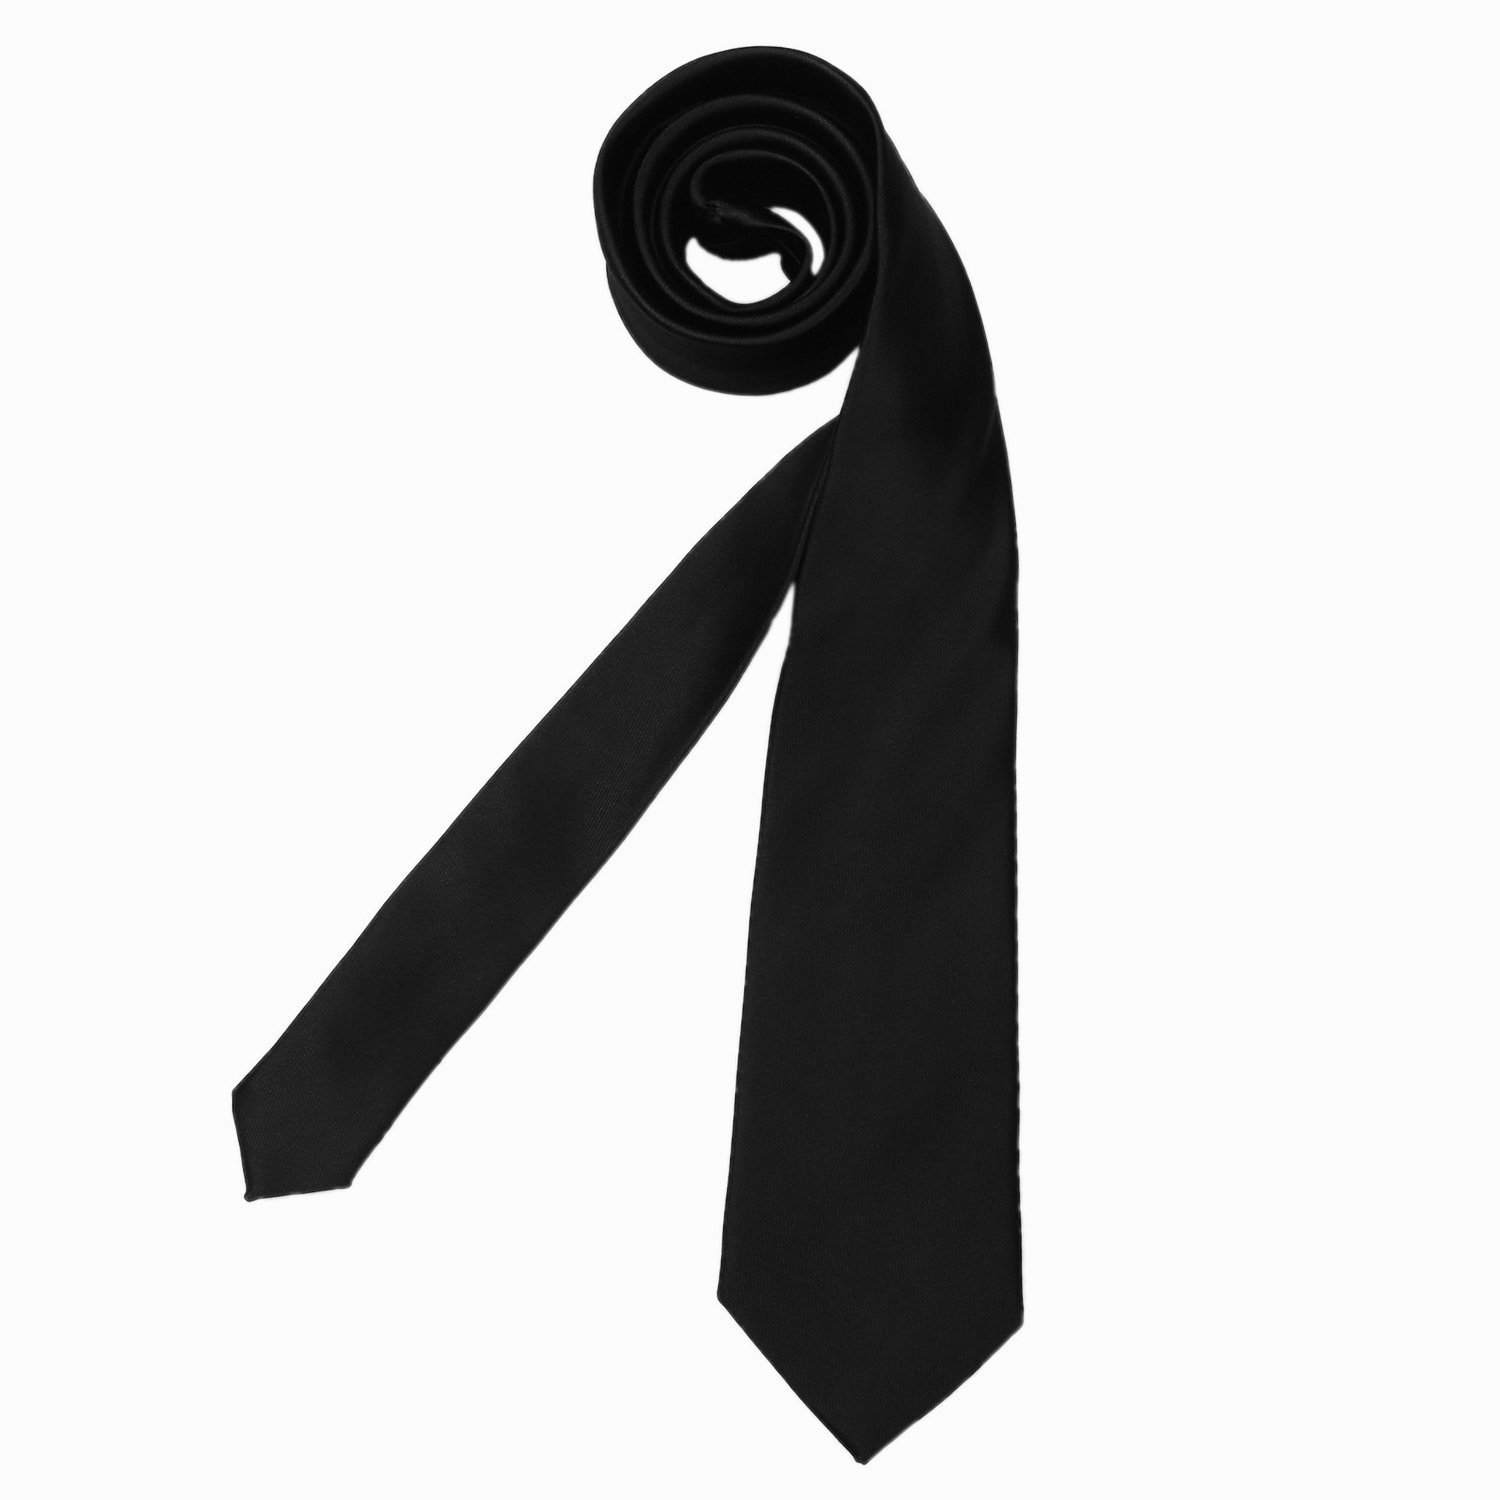 1x Schnitt, 7 1-St., für Veranstaltungen Krawatte schwarz Seidenlook, cm breit klassischer Krawatte) festliche Büro DonDon oder Krawatte zeitlos (Packung,